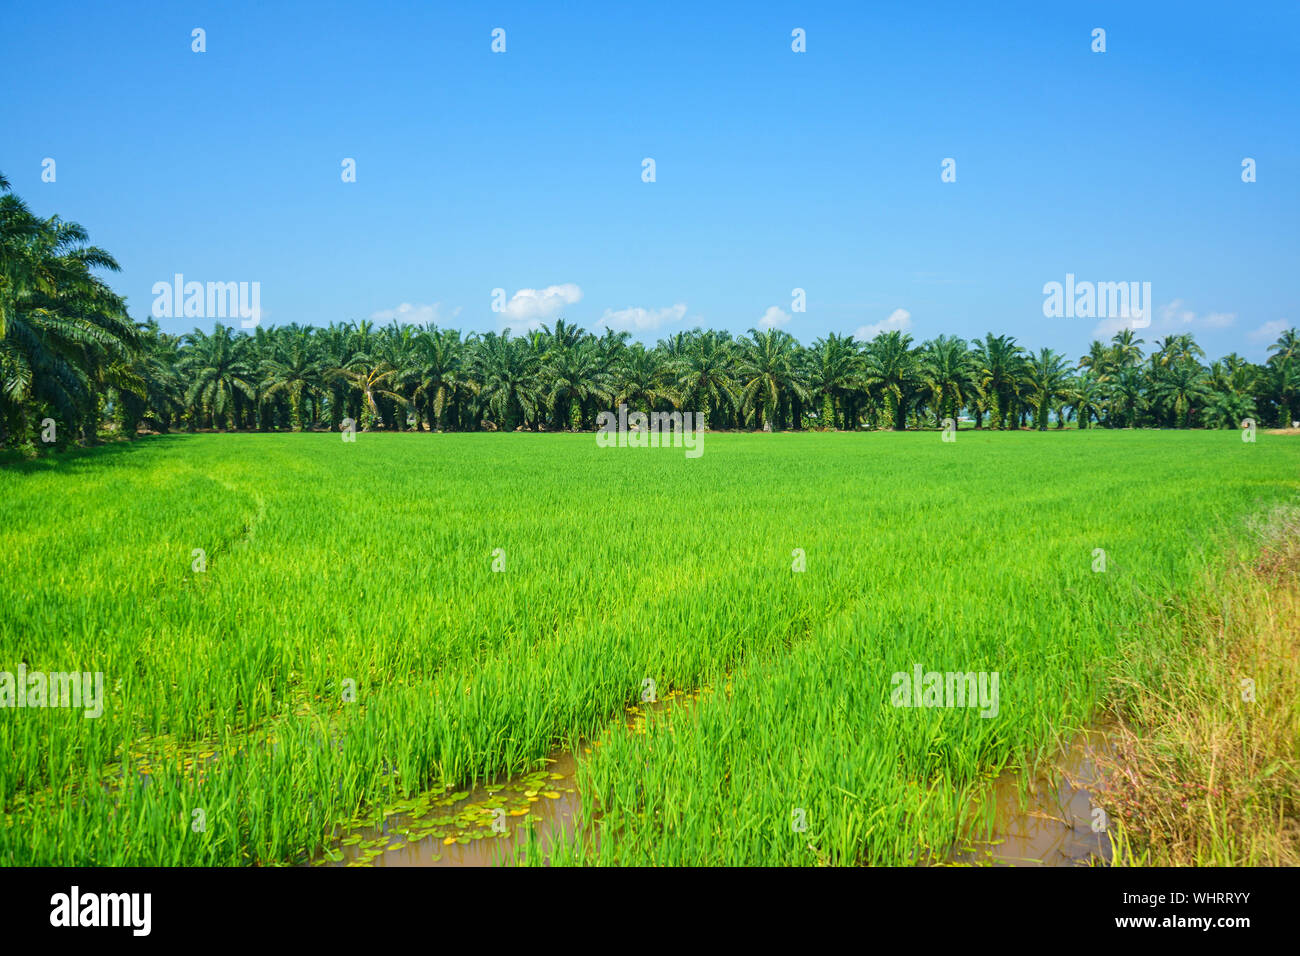 Vista escénica de arrozales y plantaciones de palma de aceite Foto de stock